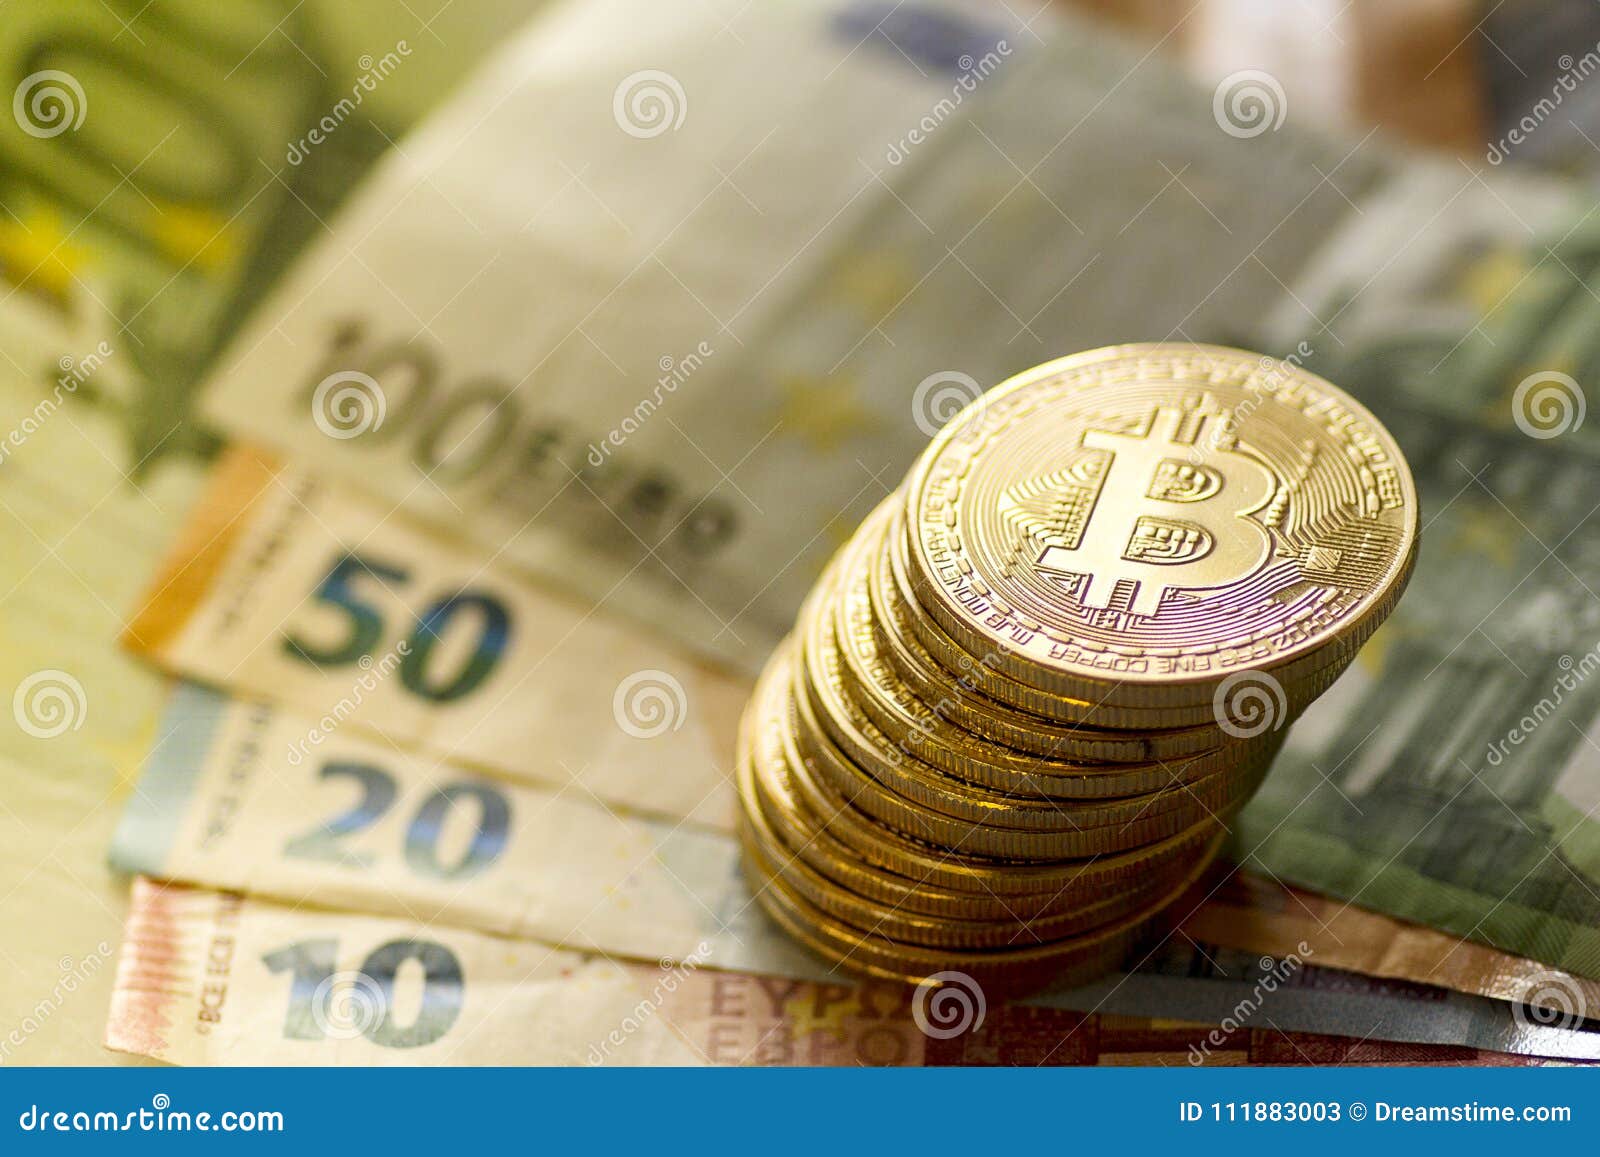 1 Satoshi In Euro